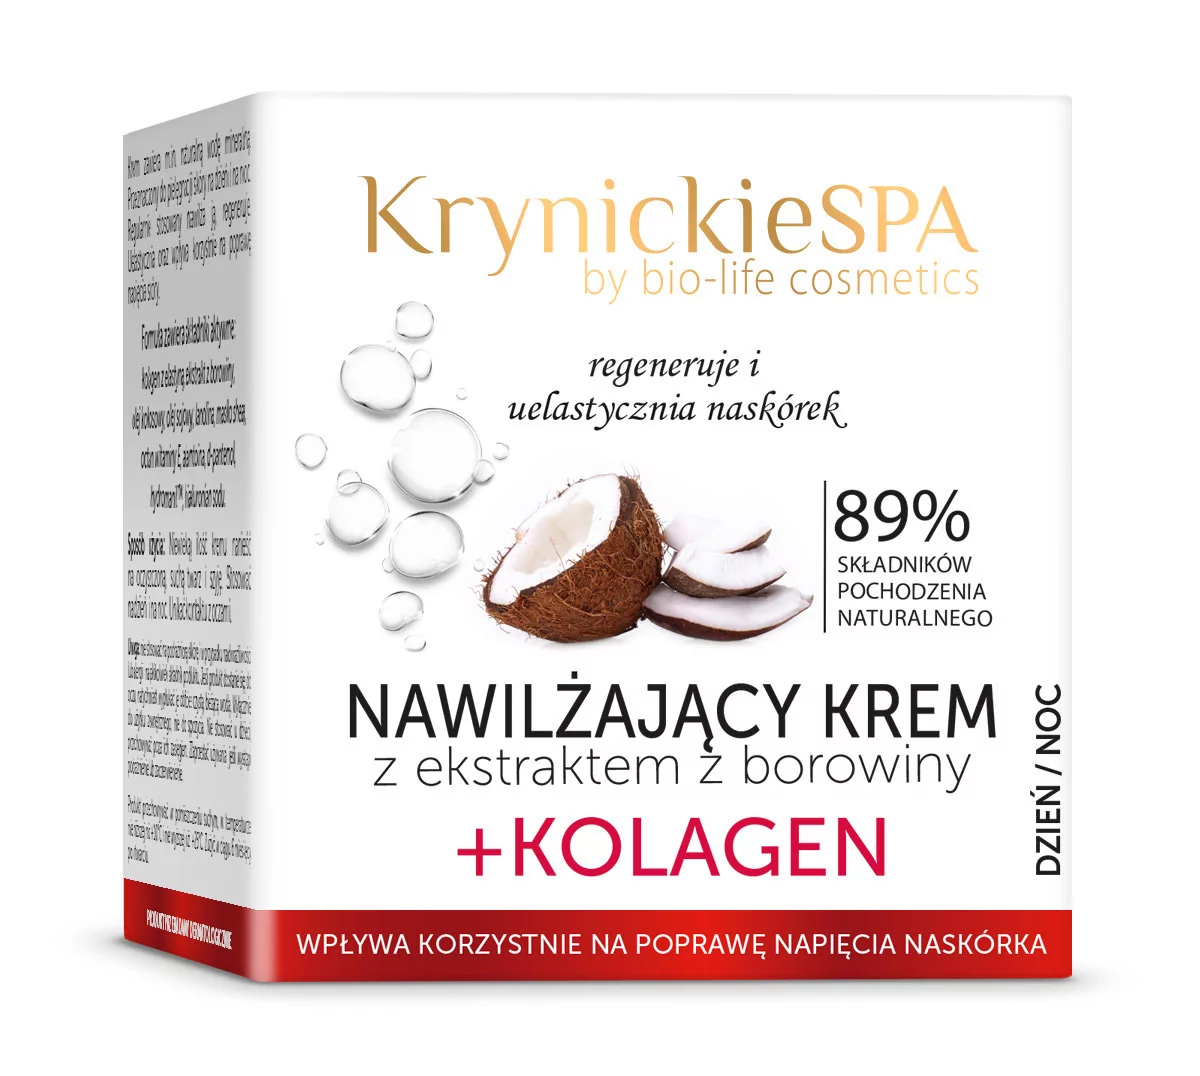 Bio life cosmetics KrynickieSPA Krem borowinowy z kolagenem do twarzy nawilżający na dzień i na noc 50 ml